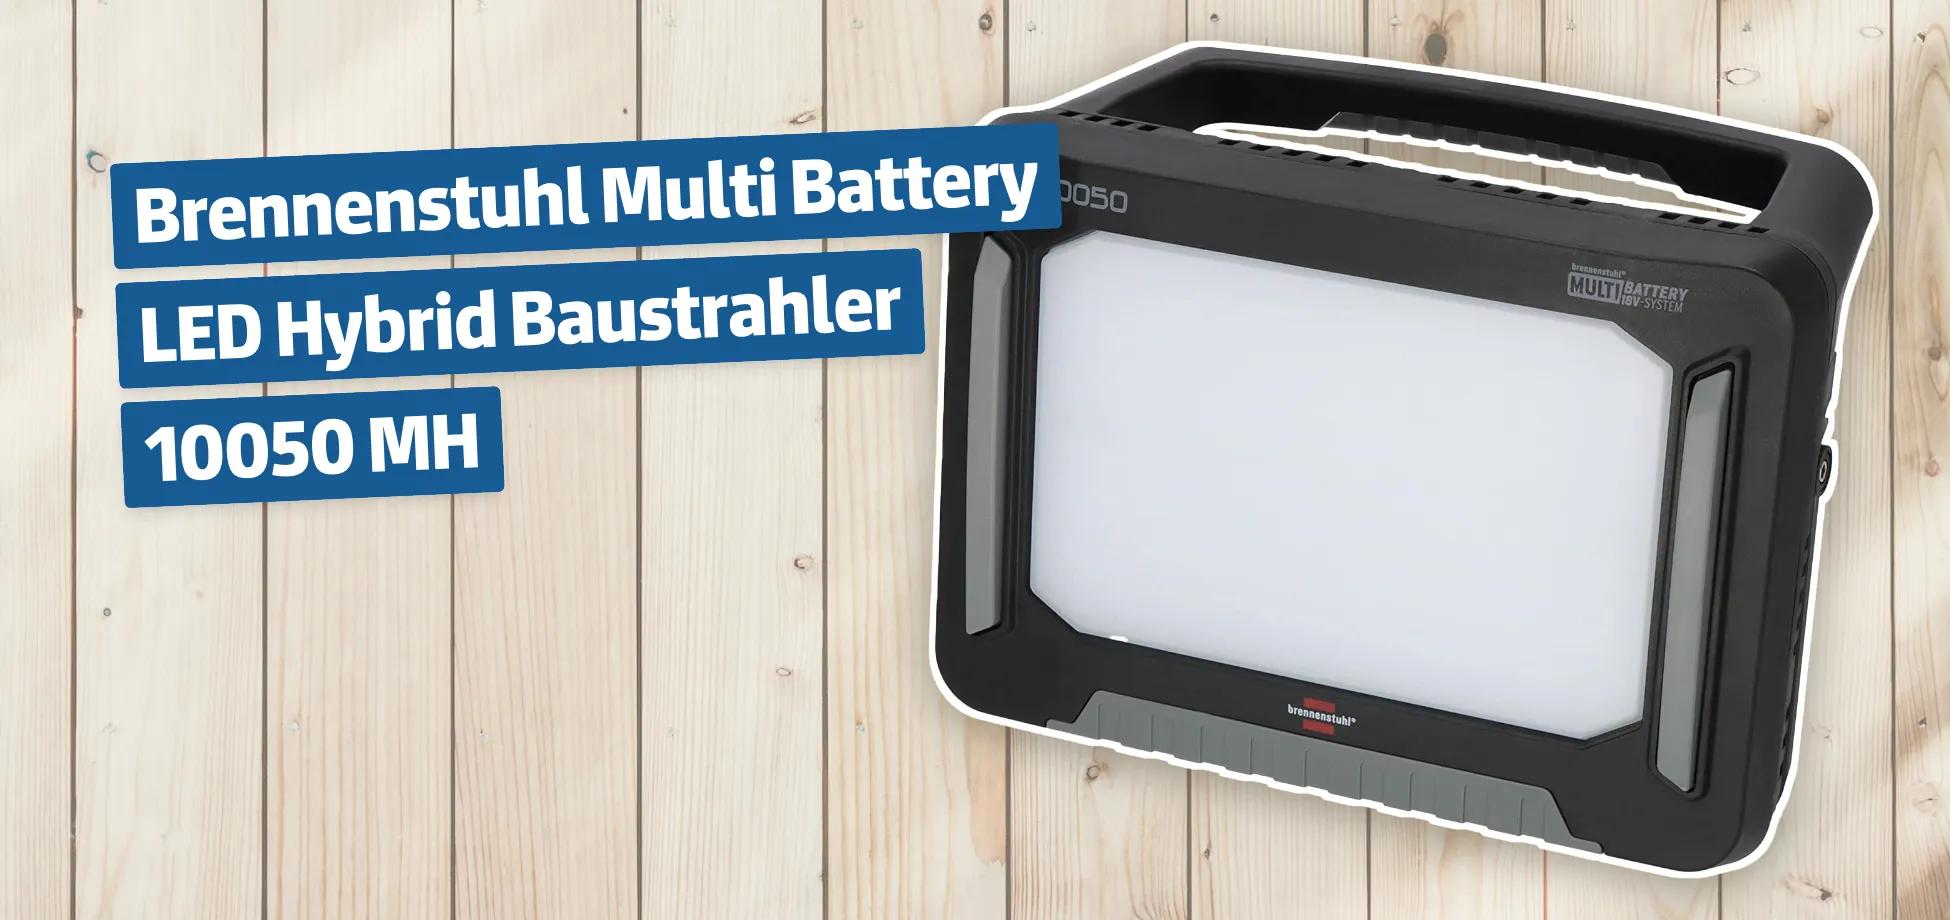 Brennenstuhl Multi Battery LED Hybrid Baustrahler 10050 MH